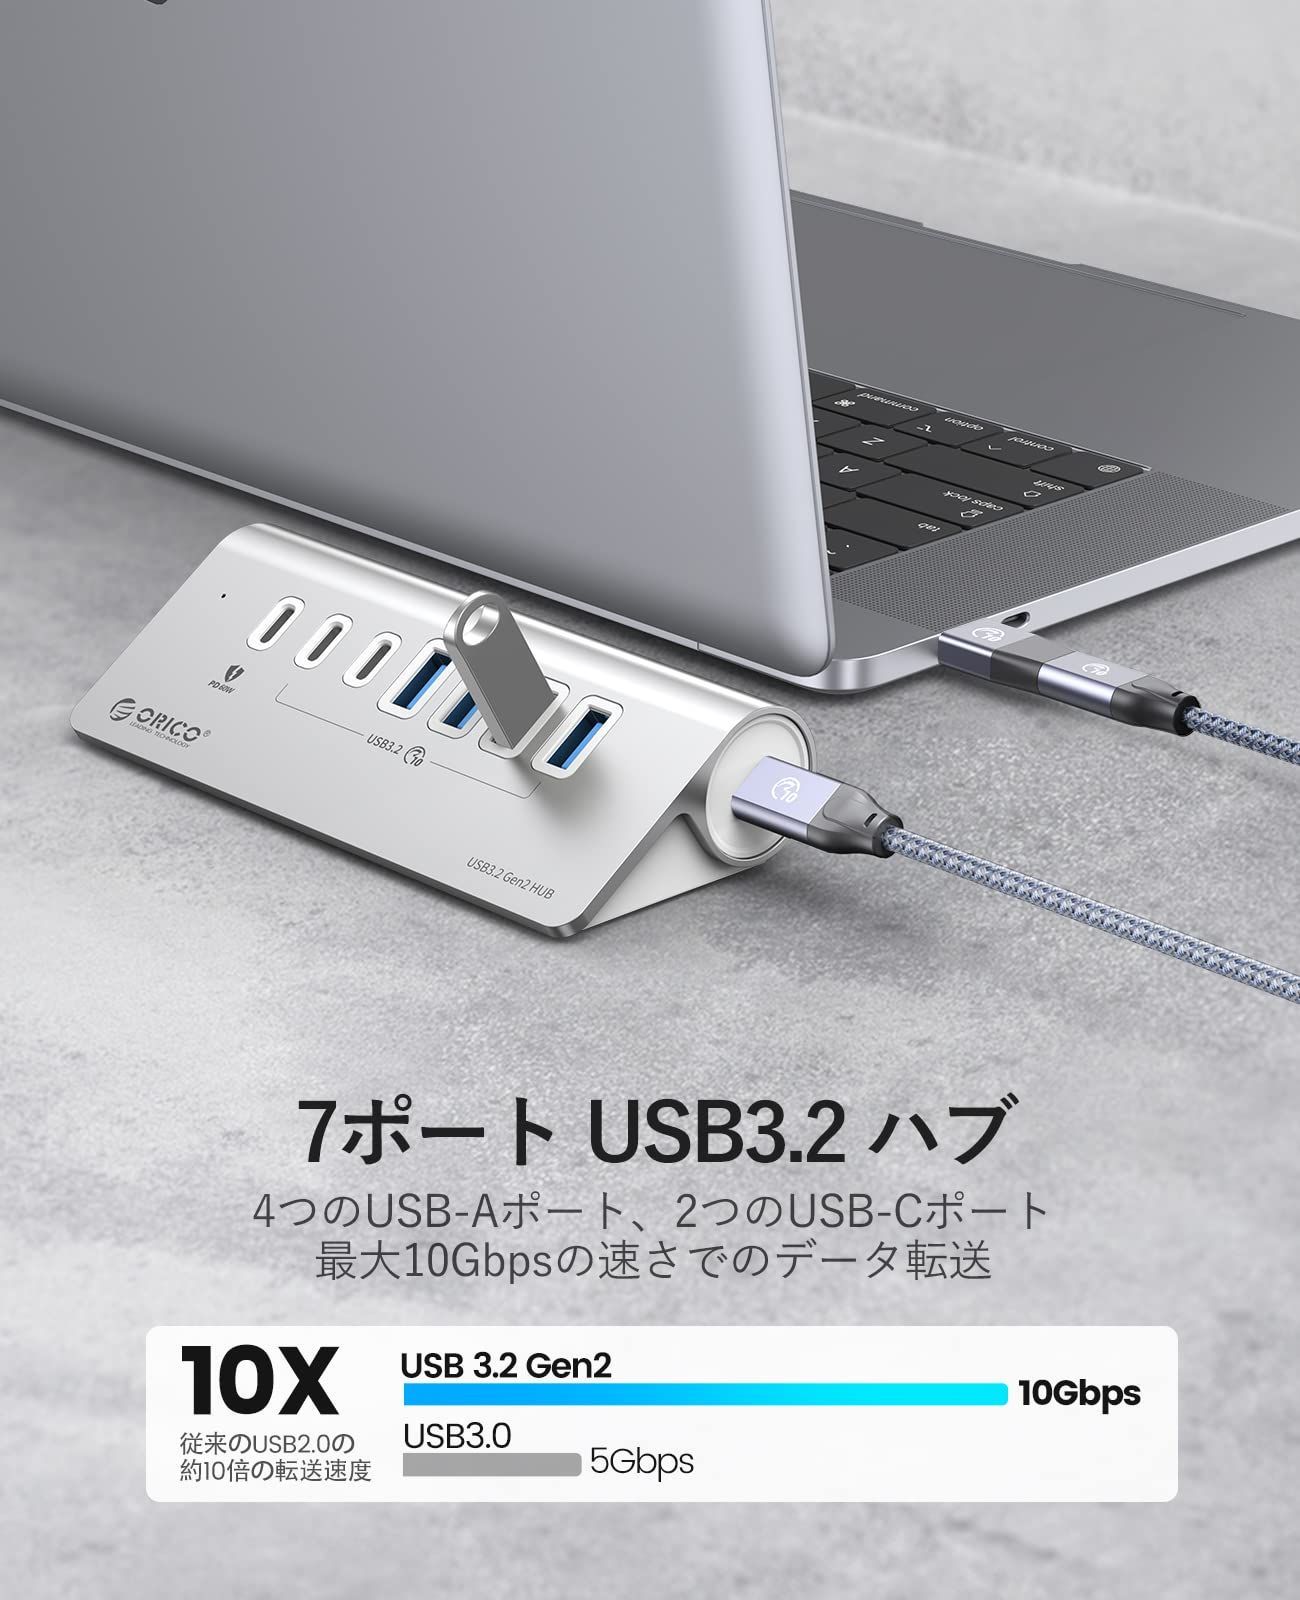 USBハブ USB2.0 HUB 50cmケーブル 4ポート スイッチ付き バスパワー 高速 データ転送 480Mbps リチウム ドッキングステーシ